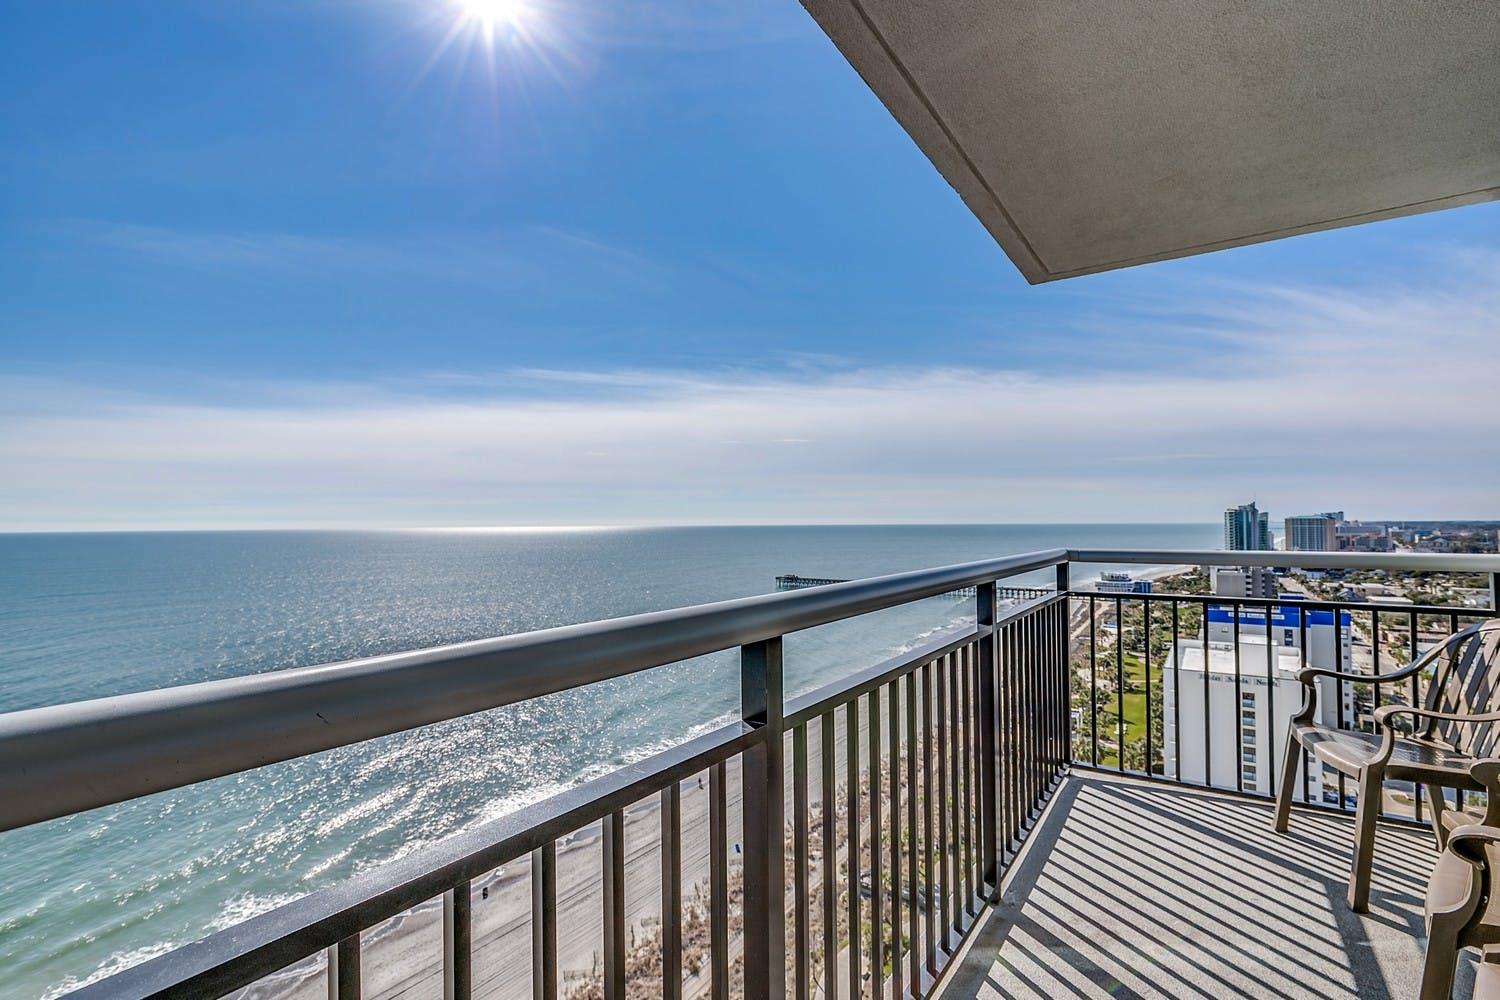 Bay View on the Boardwalk - 4 Bedroom Oceanfront Condo